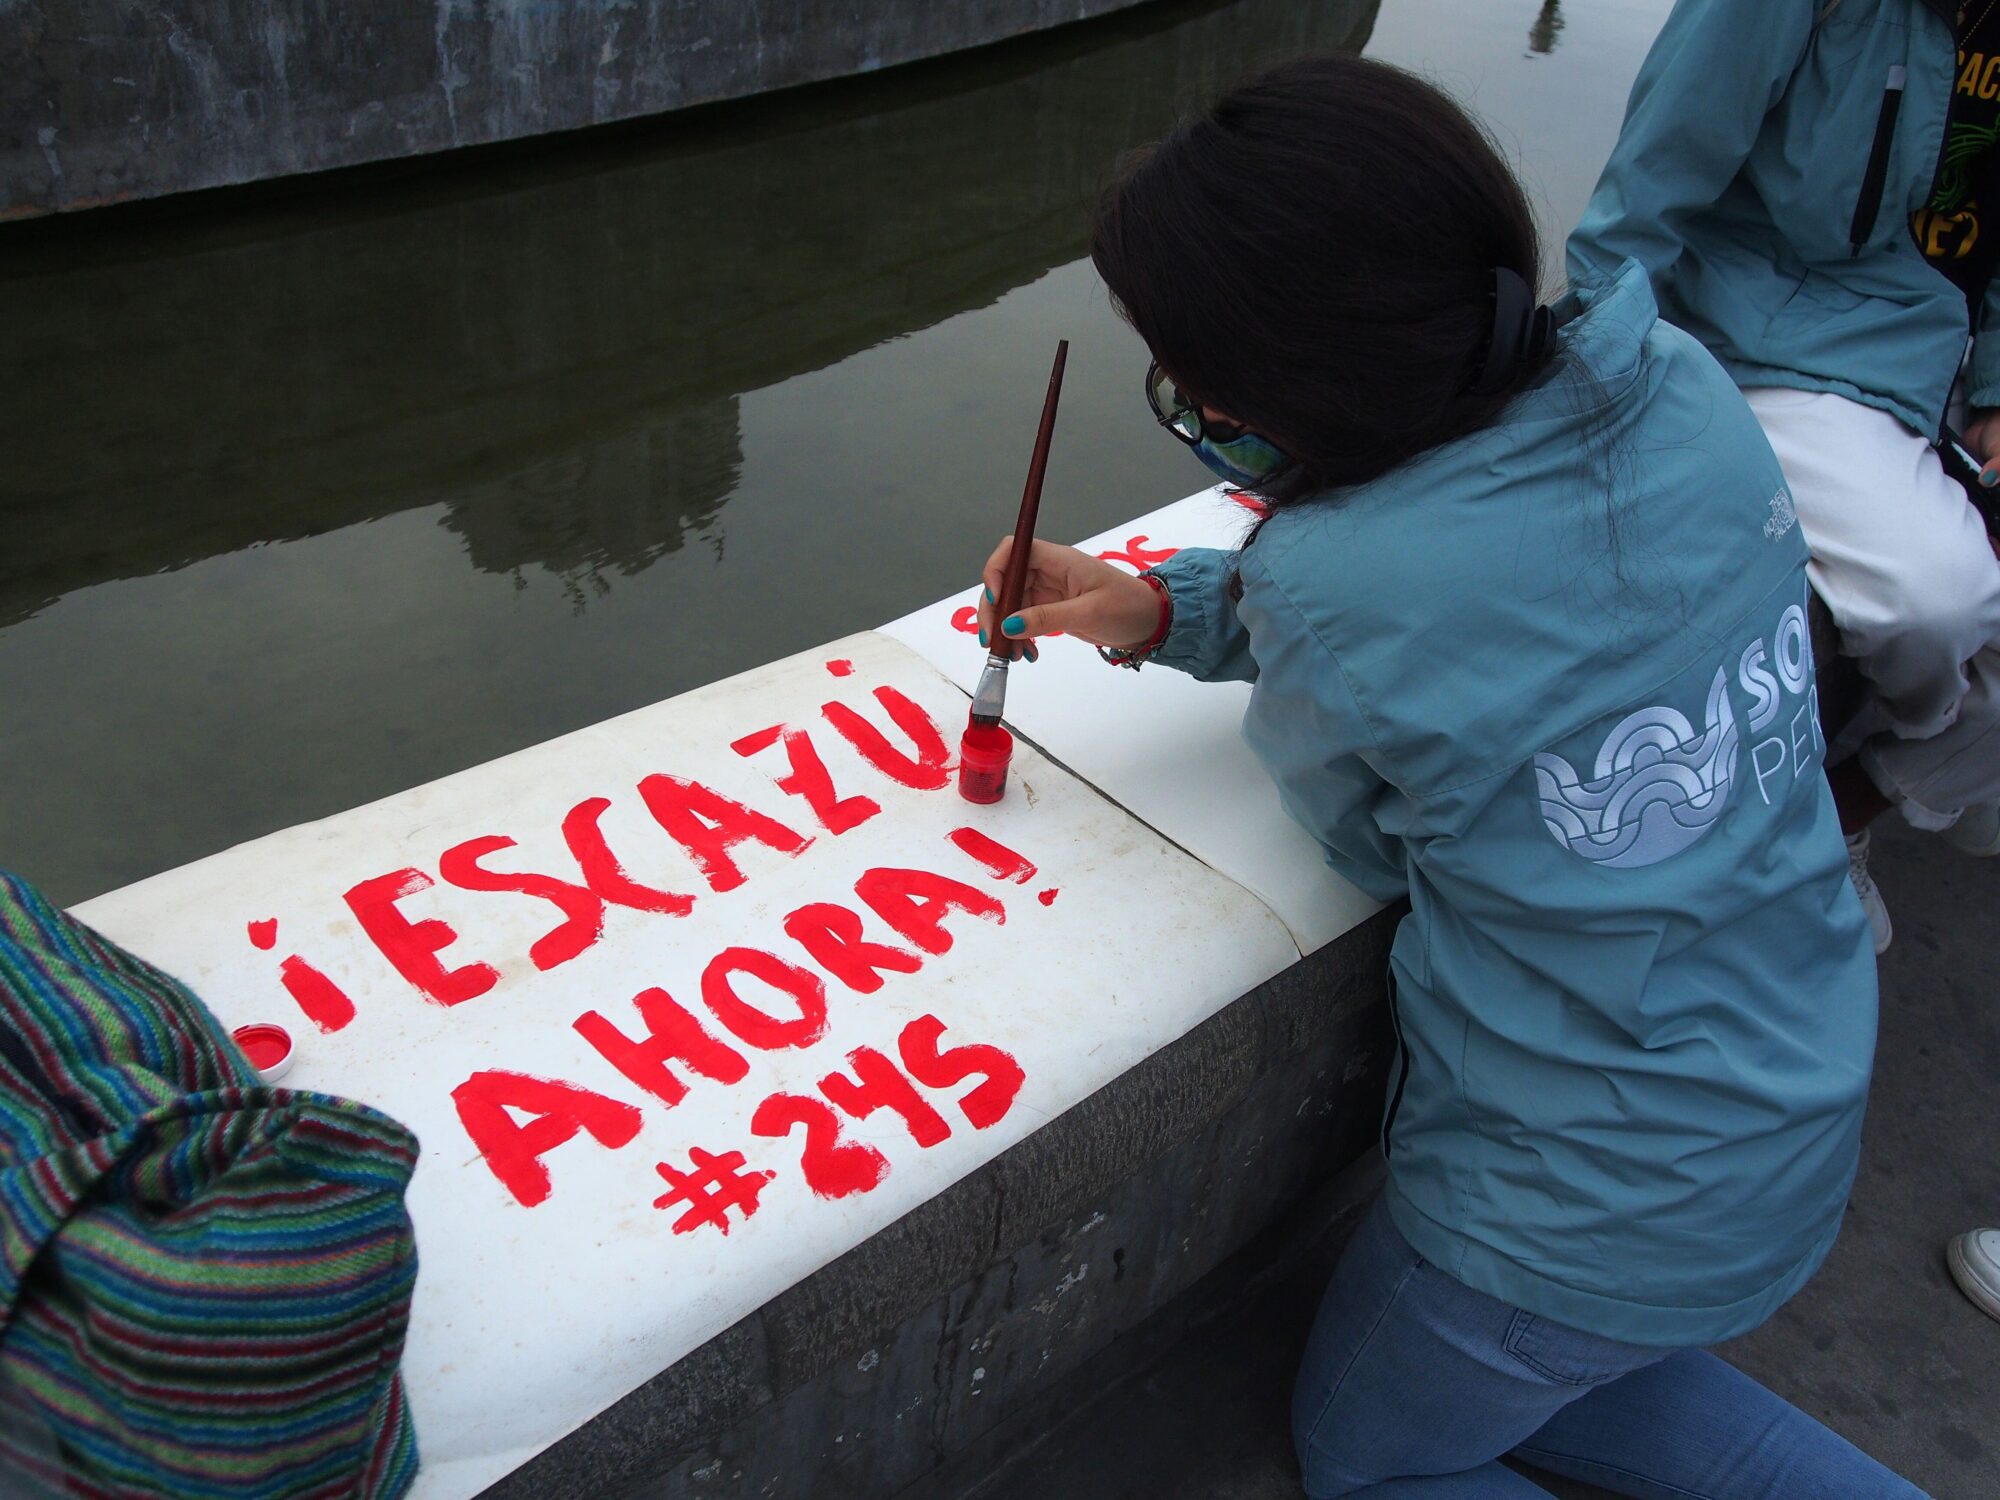 <p>Criança pinta um cartaz com os dizeres &#8220;Escazú agora!&#8221; em uma manifestação em frente ao Palácio Judiciário do Peru (Imagem: <span id="automationNormalName">Fotoholica Press Agency</span> / Alamy)</p>